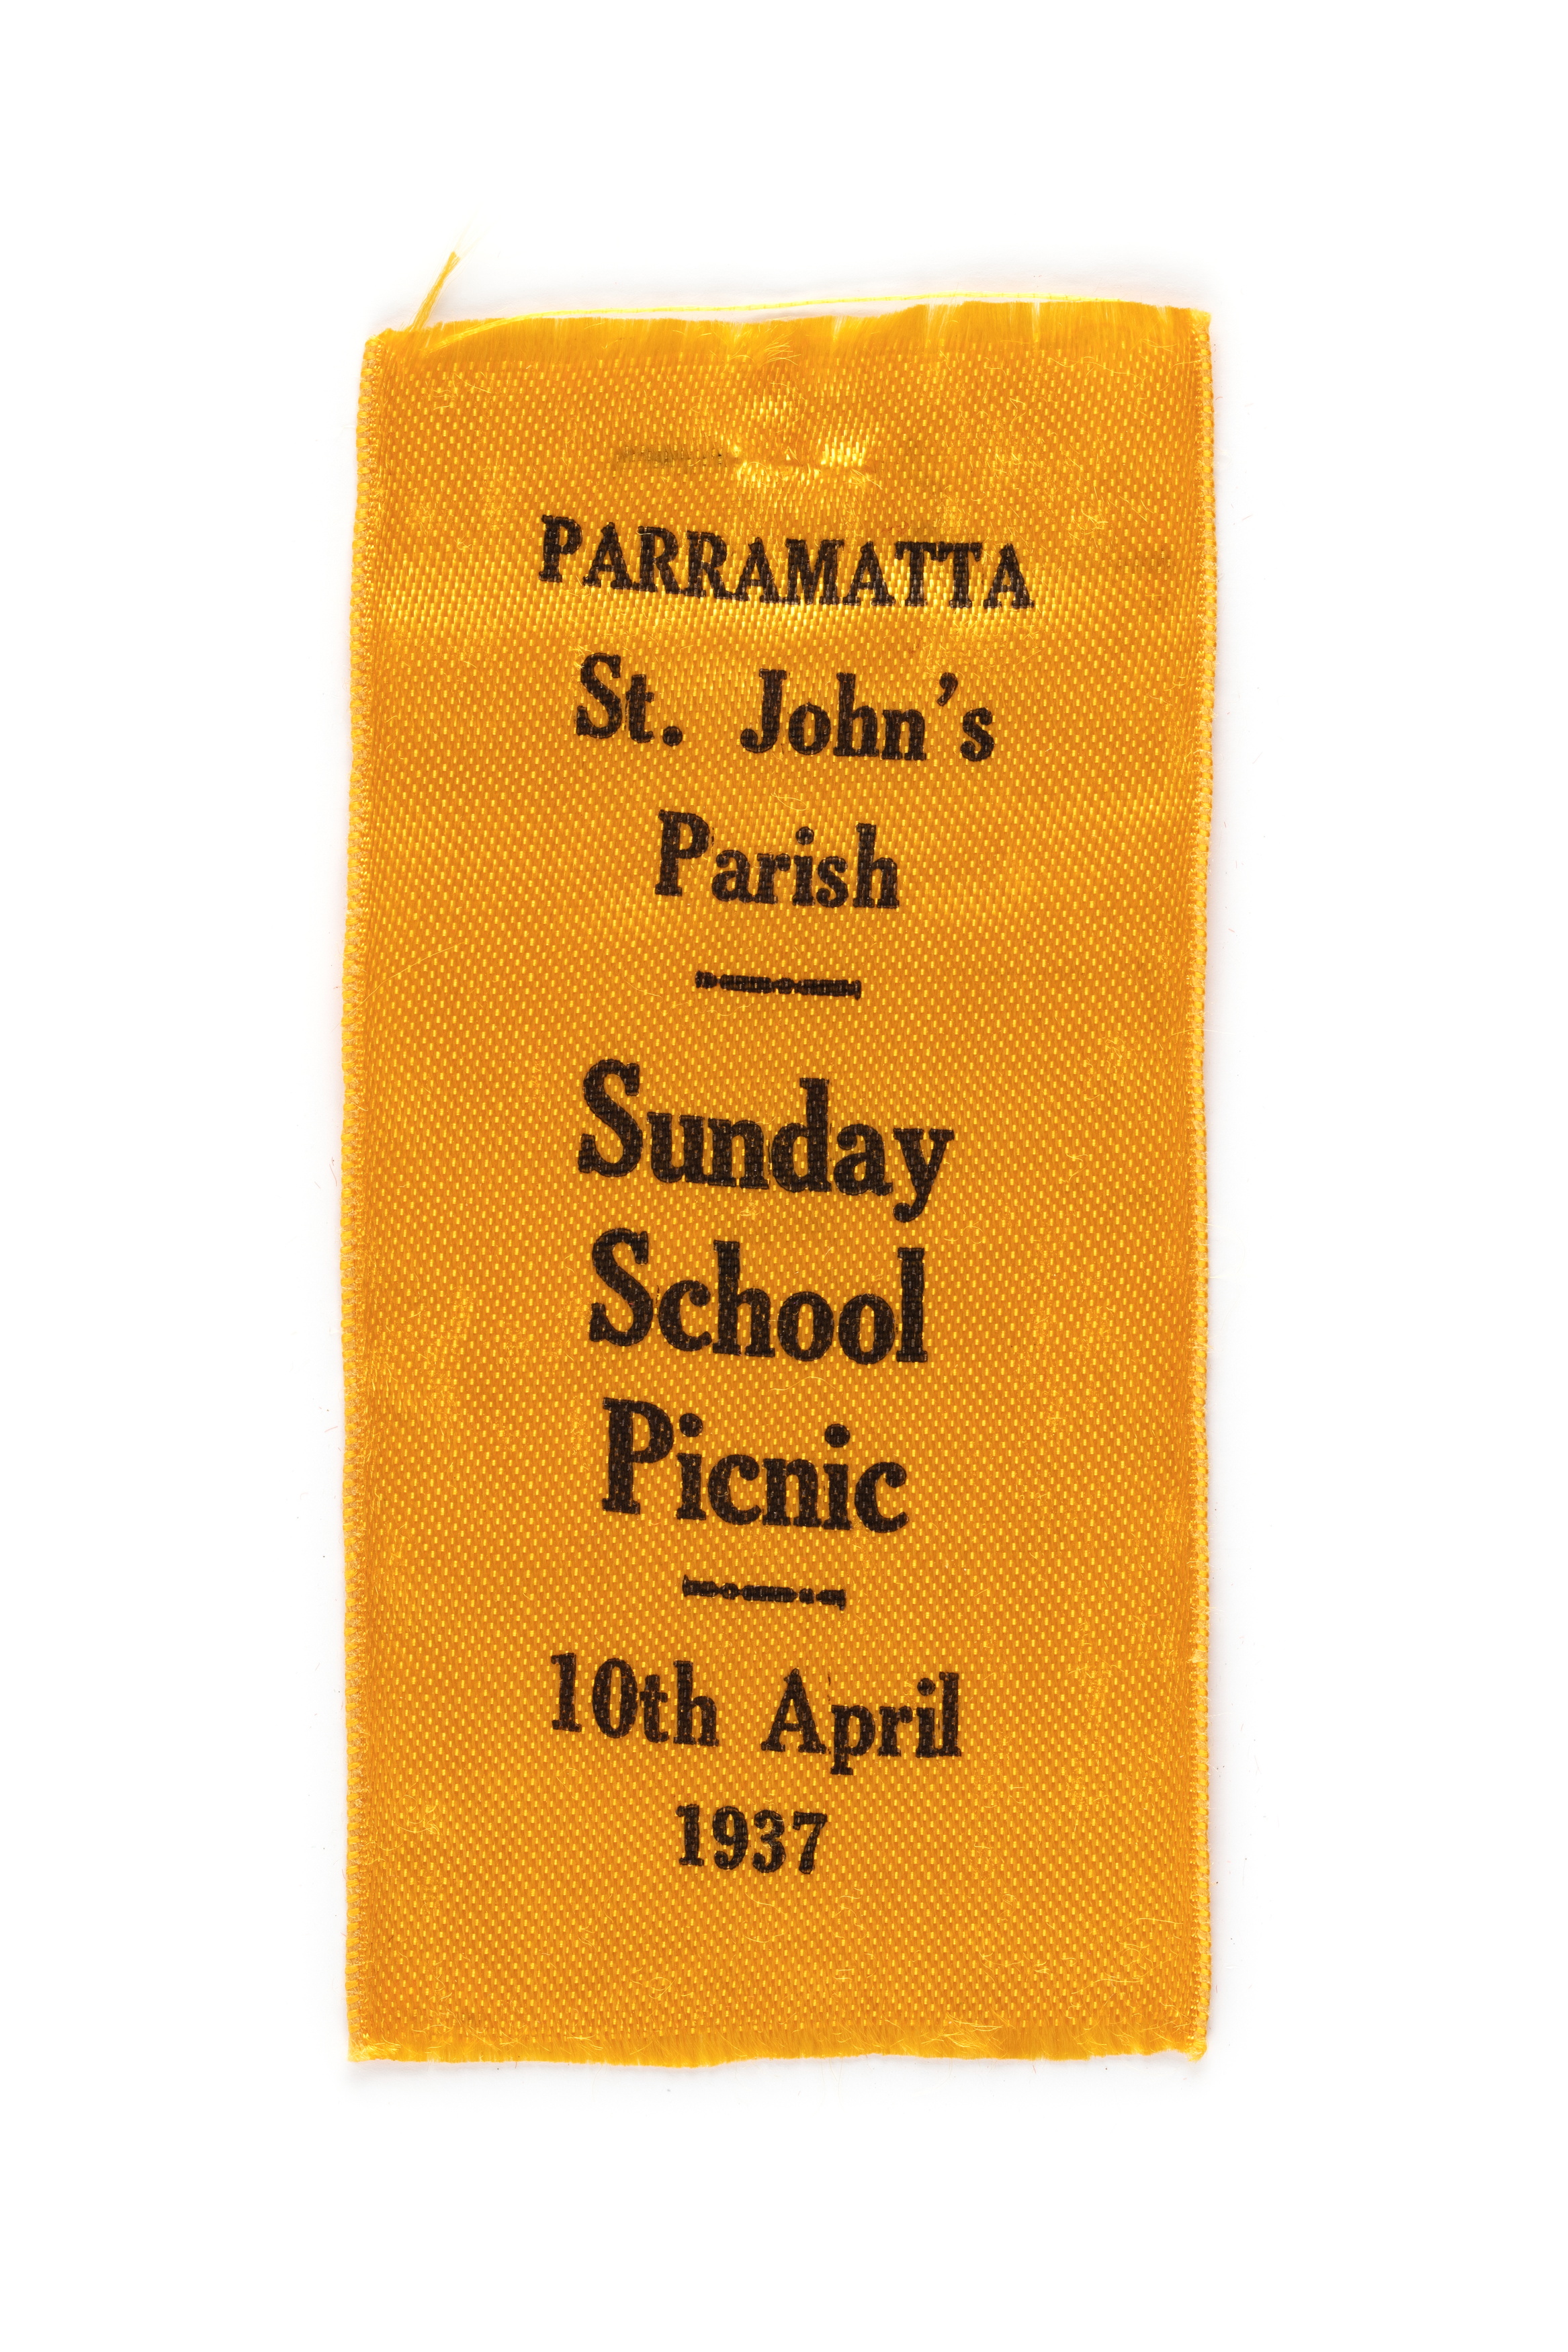 Ribbon commemorating St Johns Parish Sunday School Picnic